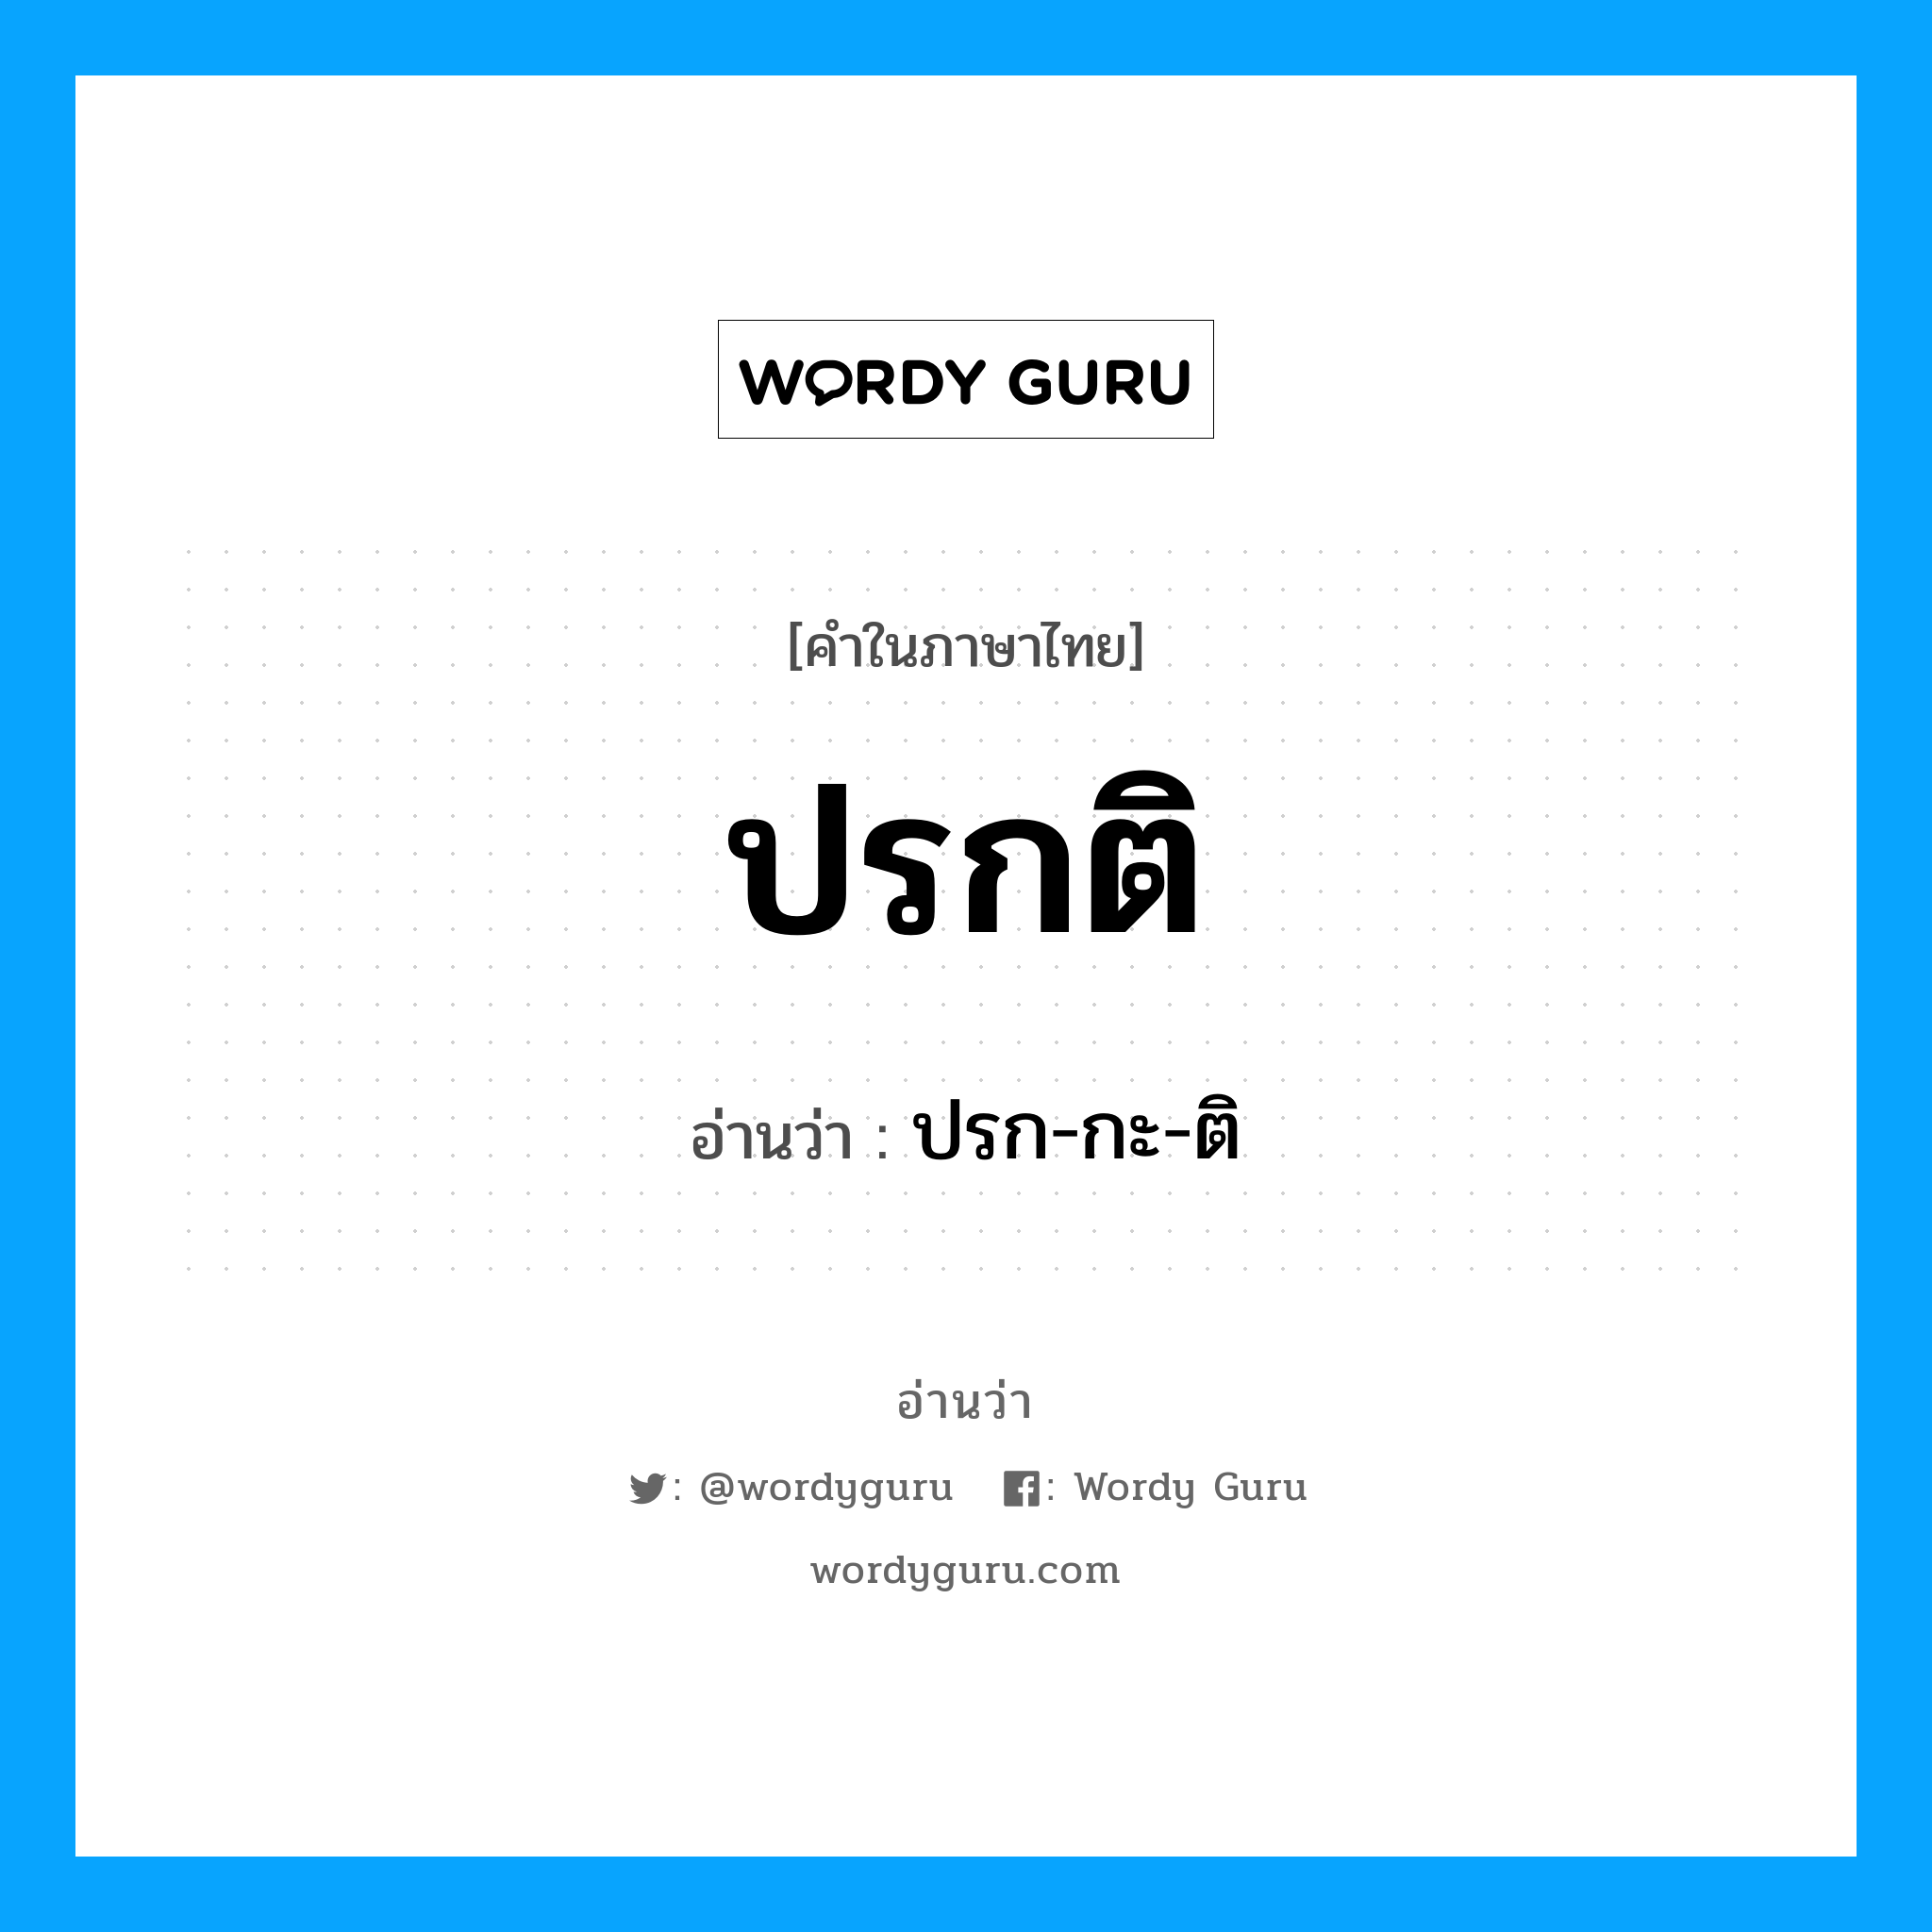 ปรก-กะ-ติ เป็นคำอ่านของคำไหน?, คำในภาษาไทย ปรก-กะ-ติ อ่านว่า ปรกติ